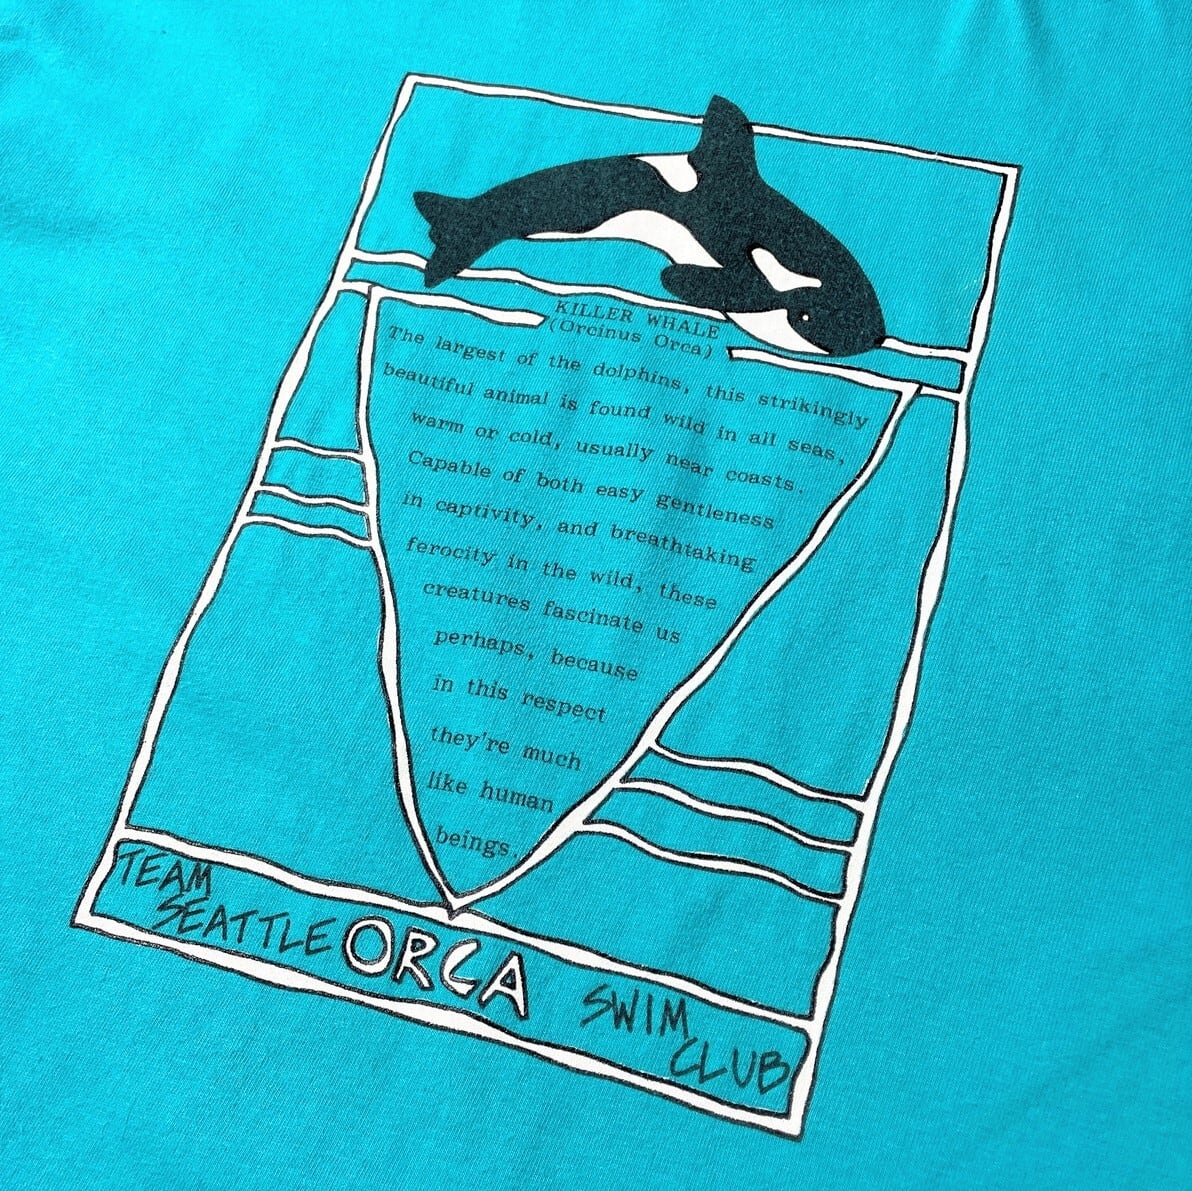 80年代 USA製 TEAM SEATTLE ORCA SWIM CLUB シャチ アニマル アート ...